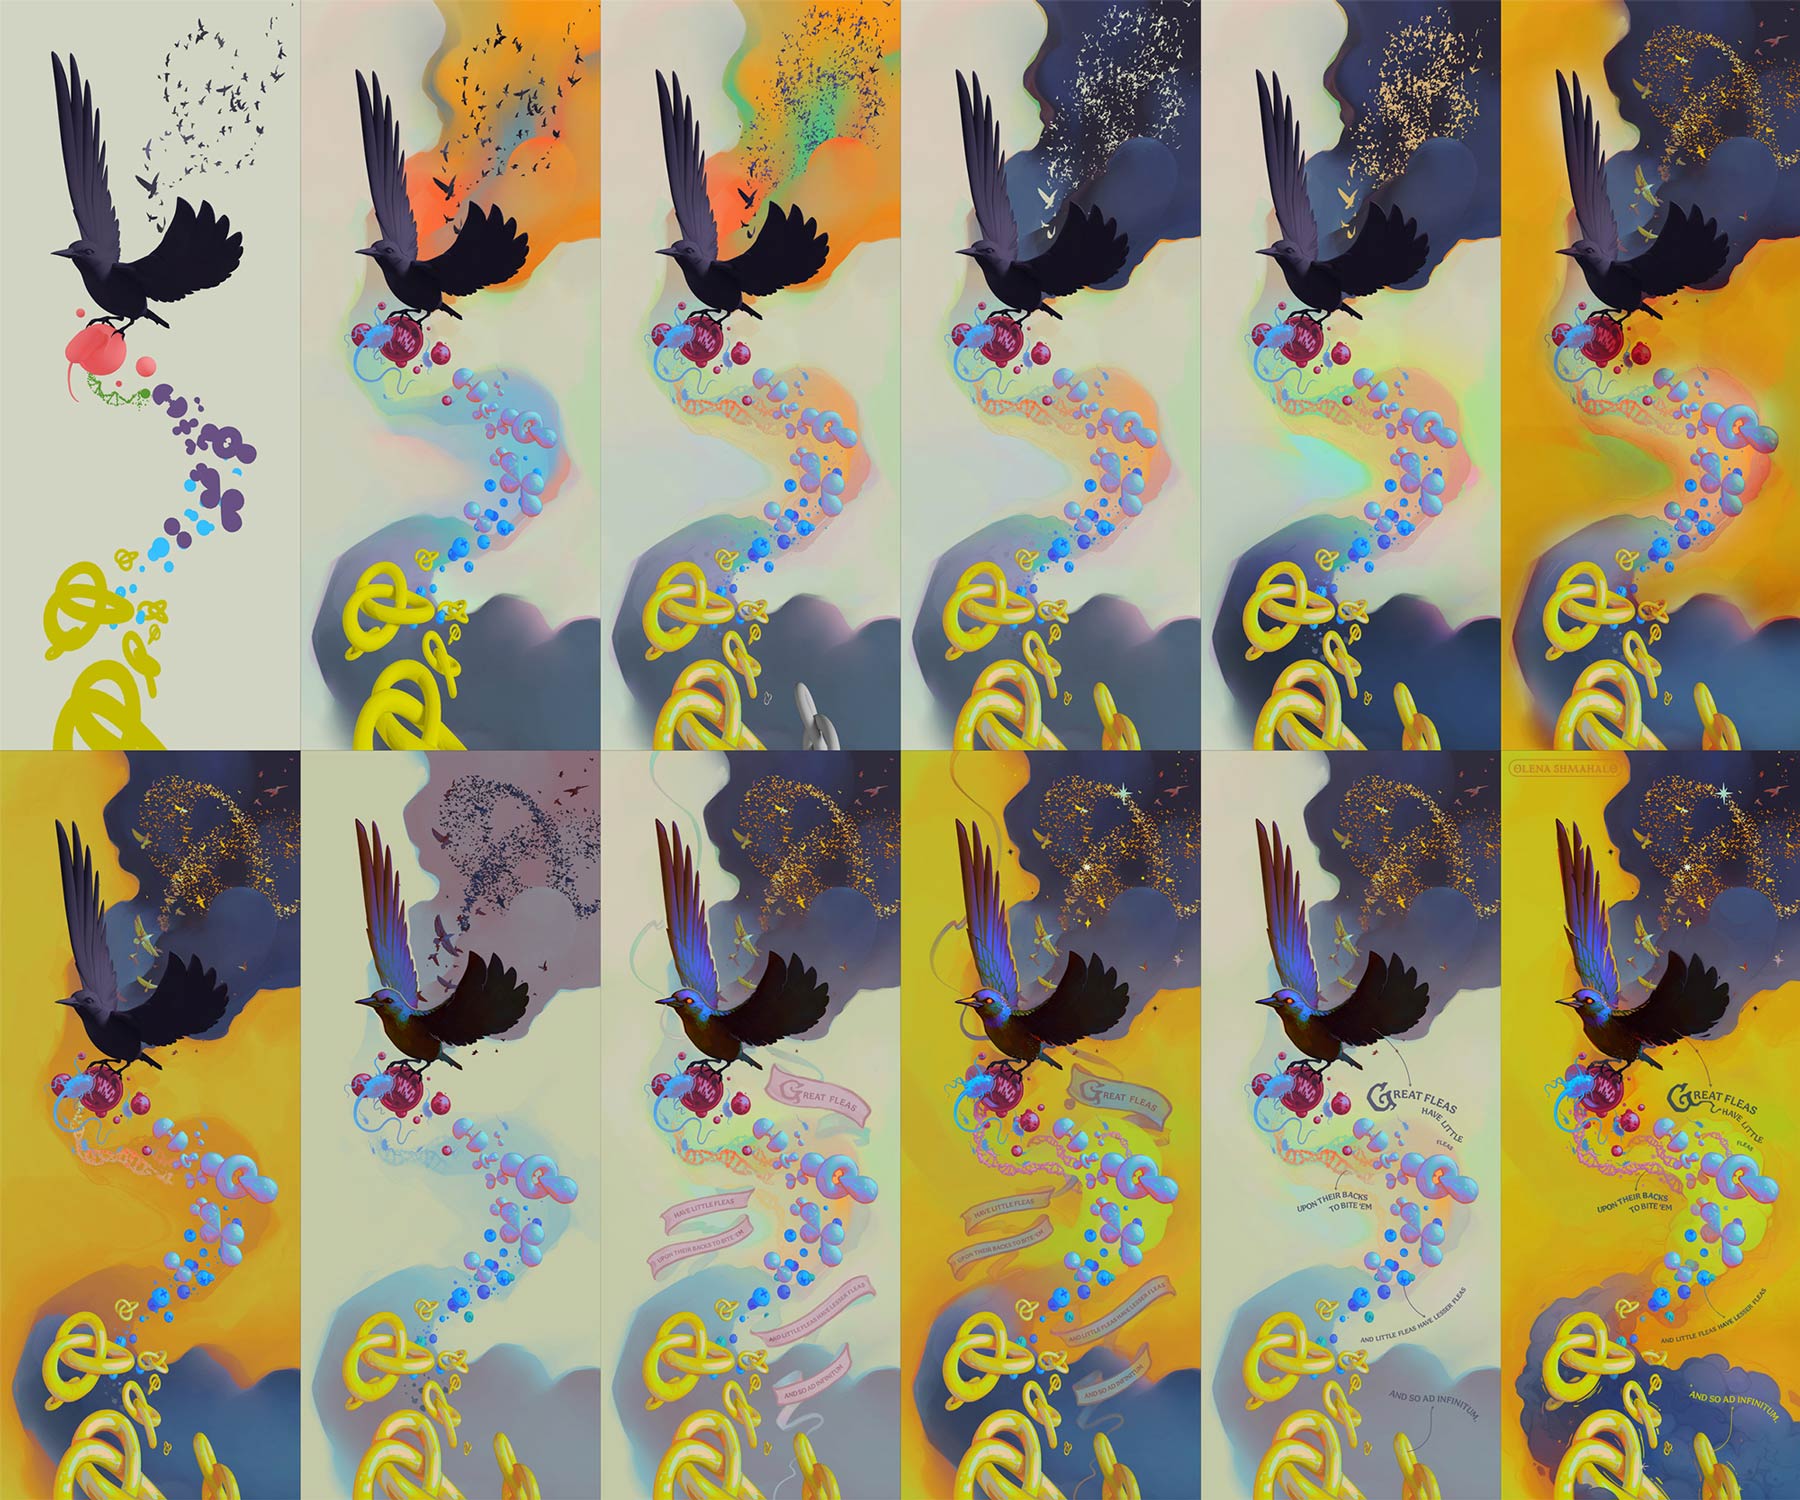 Starling painting process screenshots